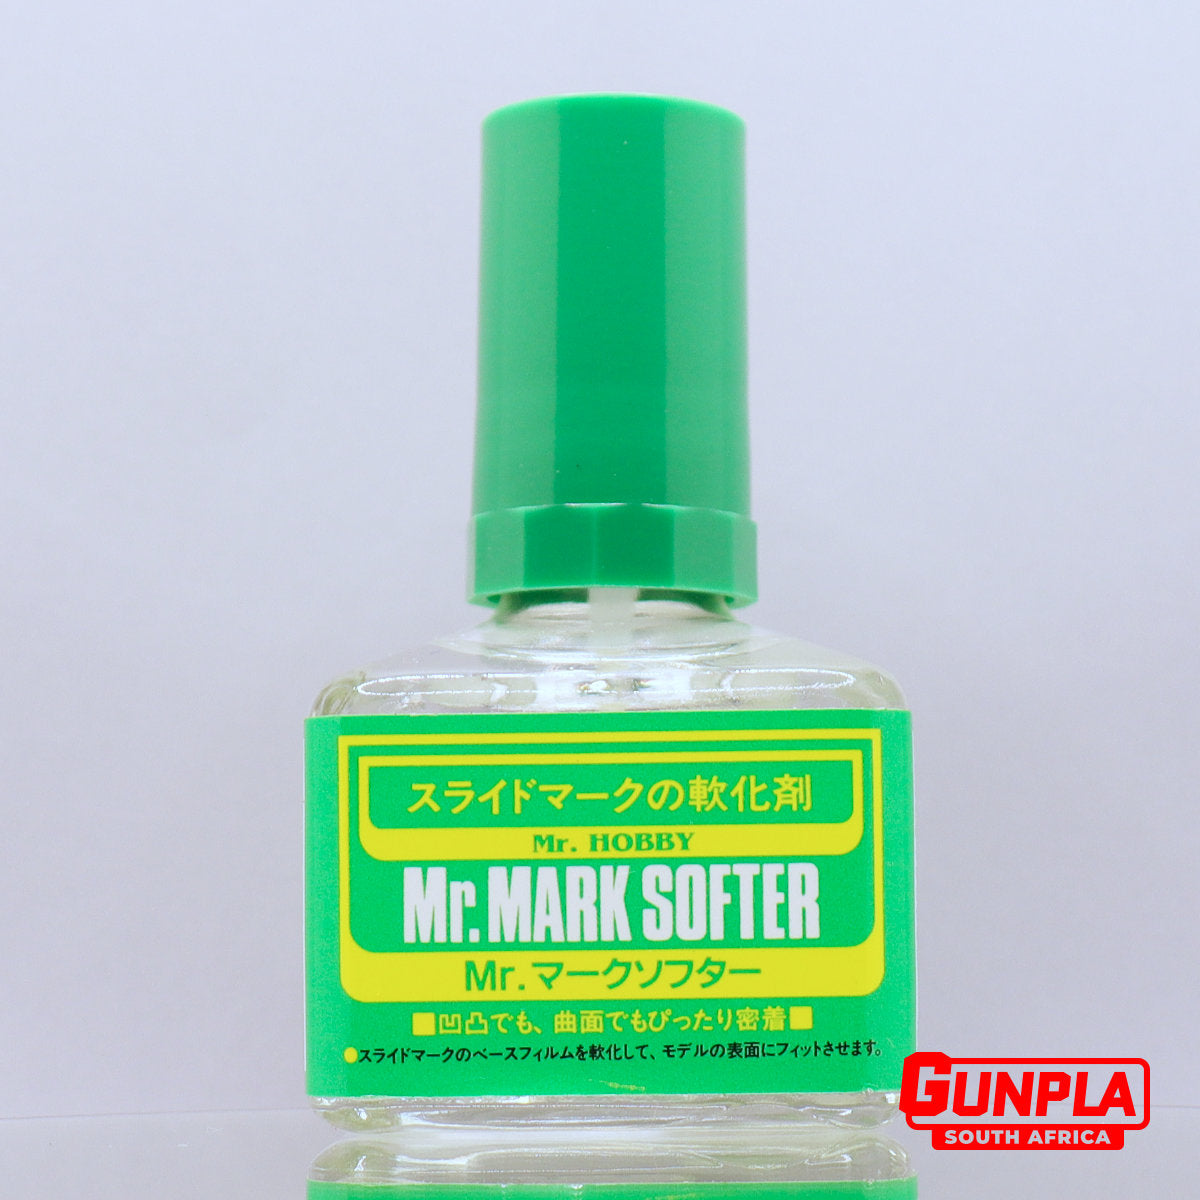 Mr. MARK SOFTER — GUNPLA SA